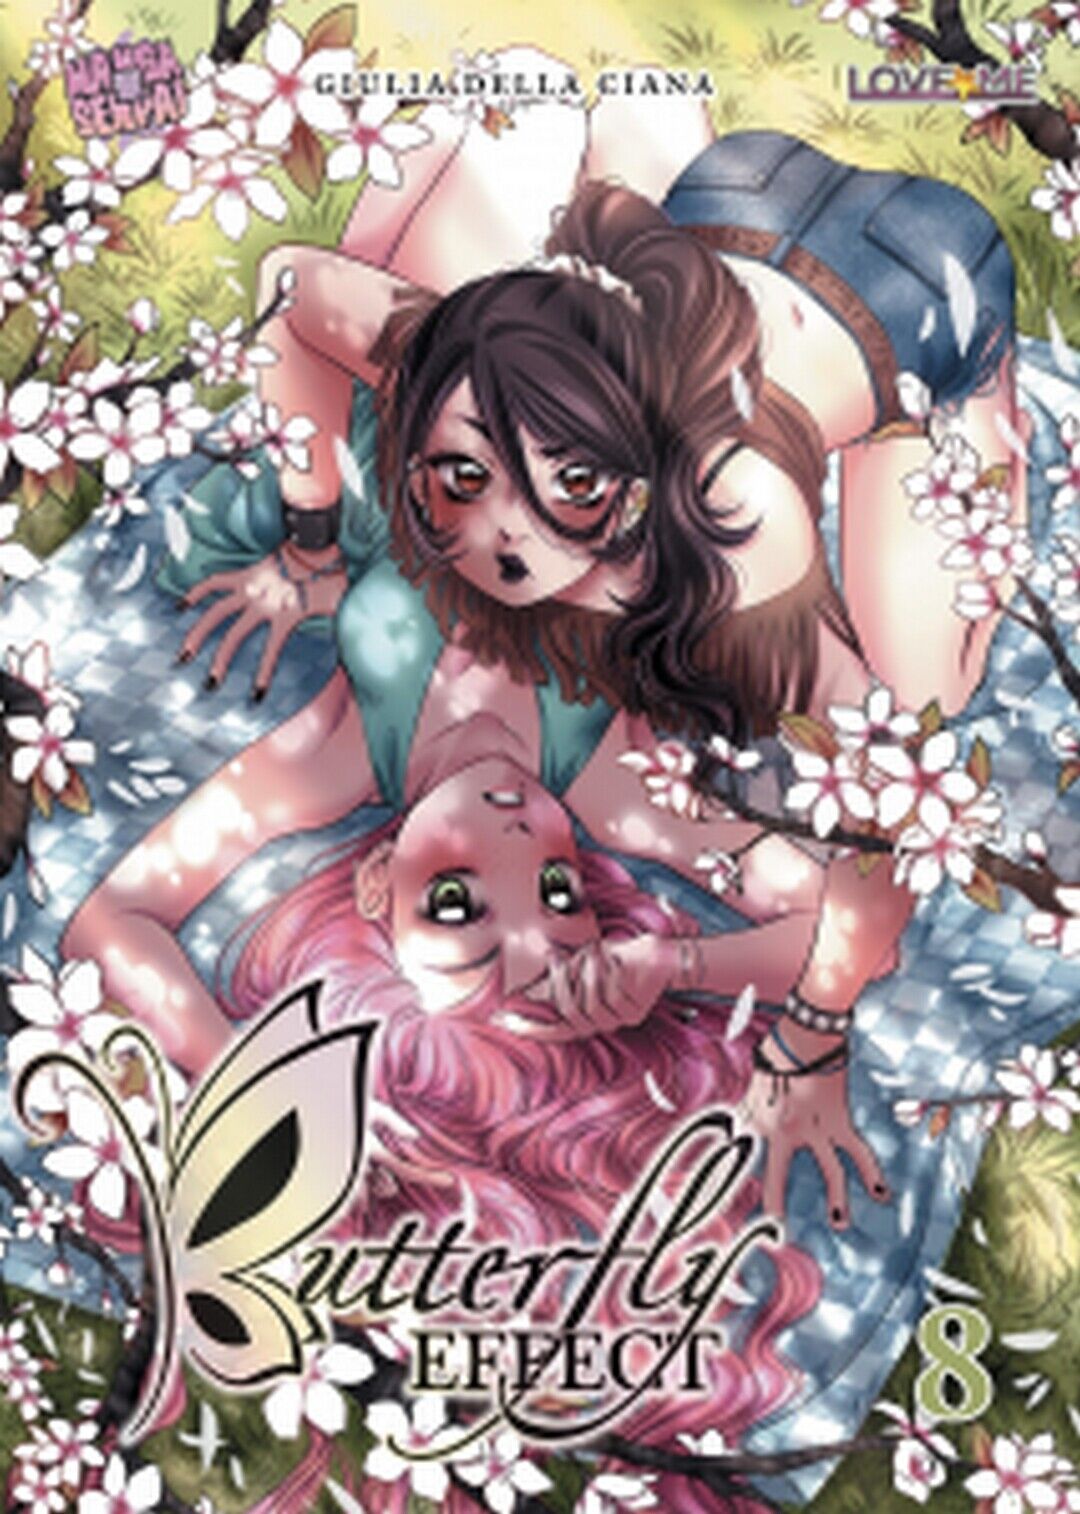 BUTTERFLY EFFECT volume 8  di Giulia Della Ciana,  2019,  Manga Senpai